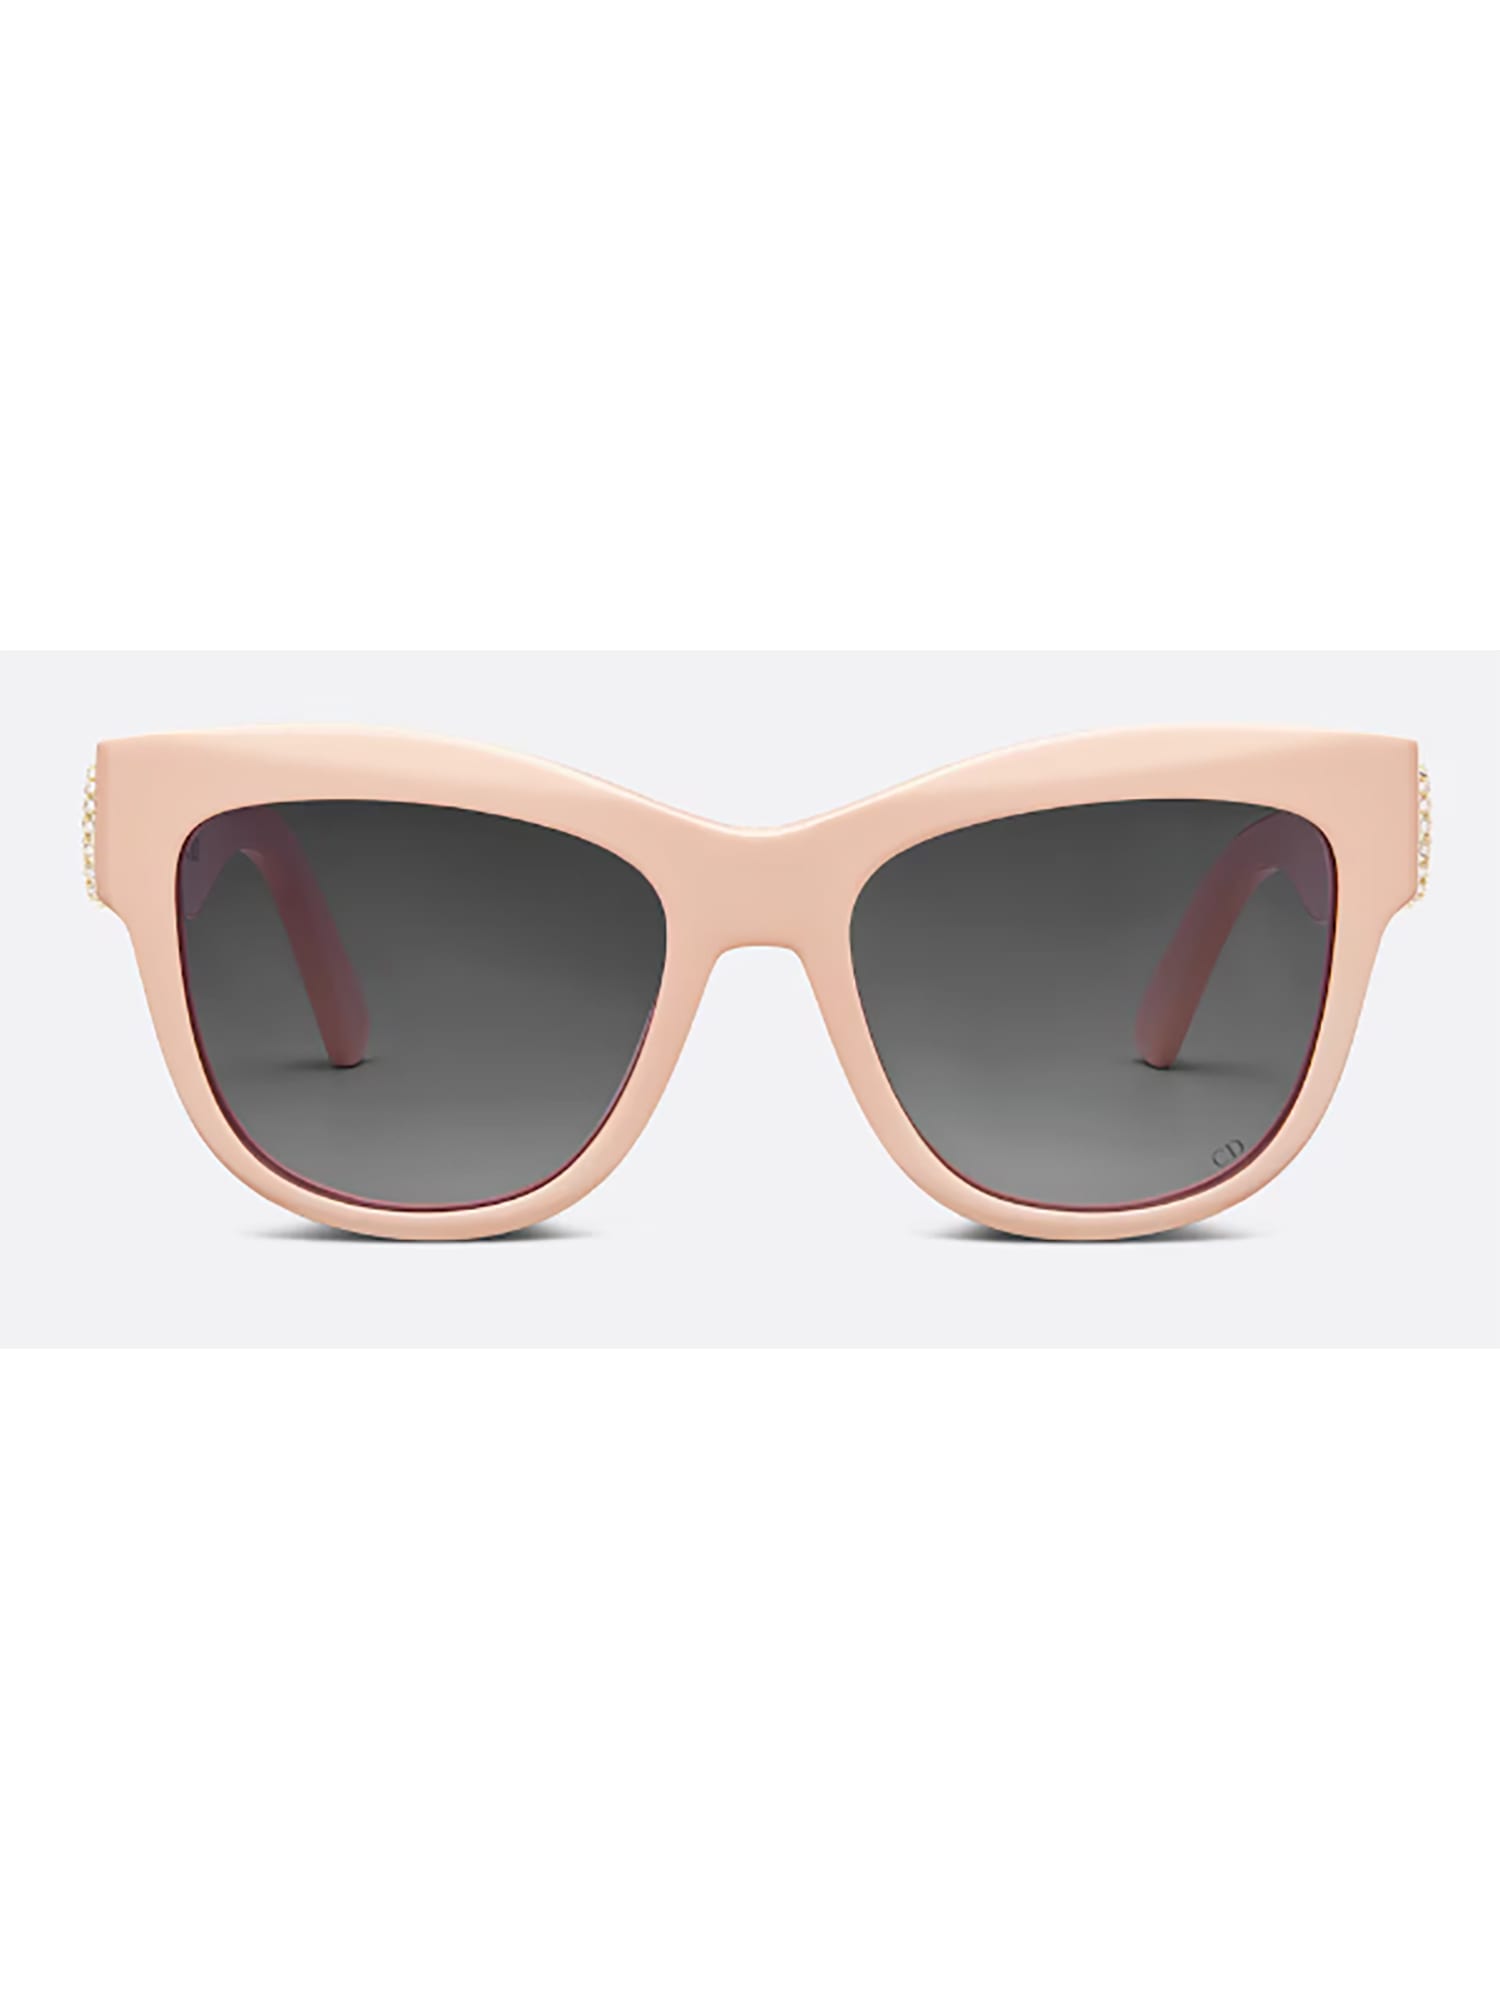 Dior 30montaigne B4i Sunglasses In Neutral